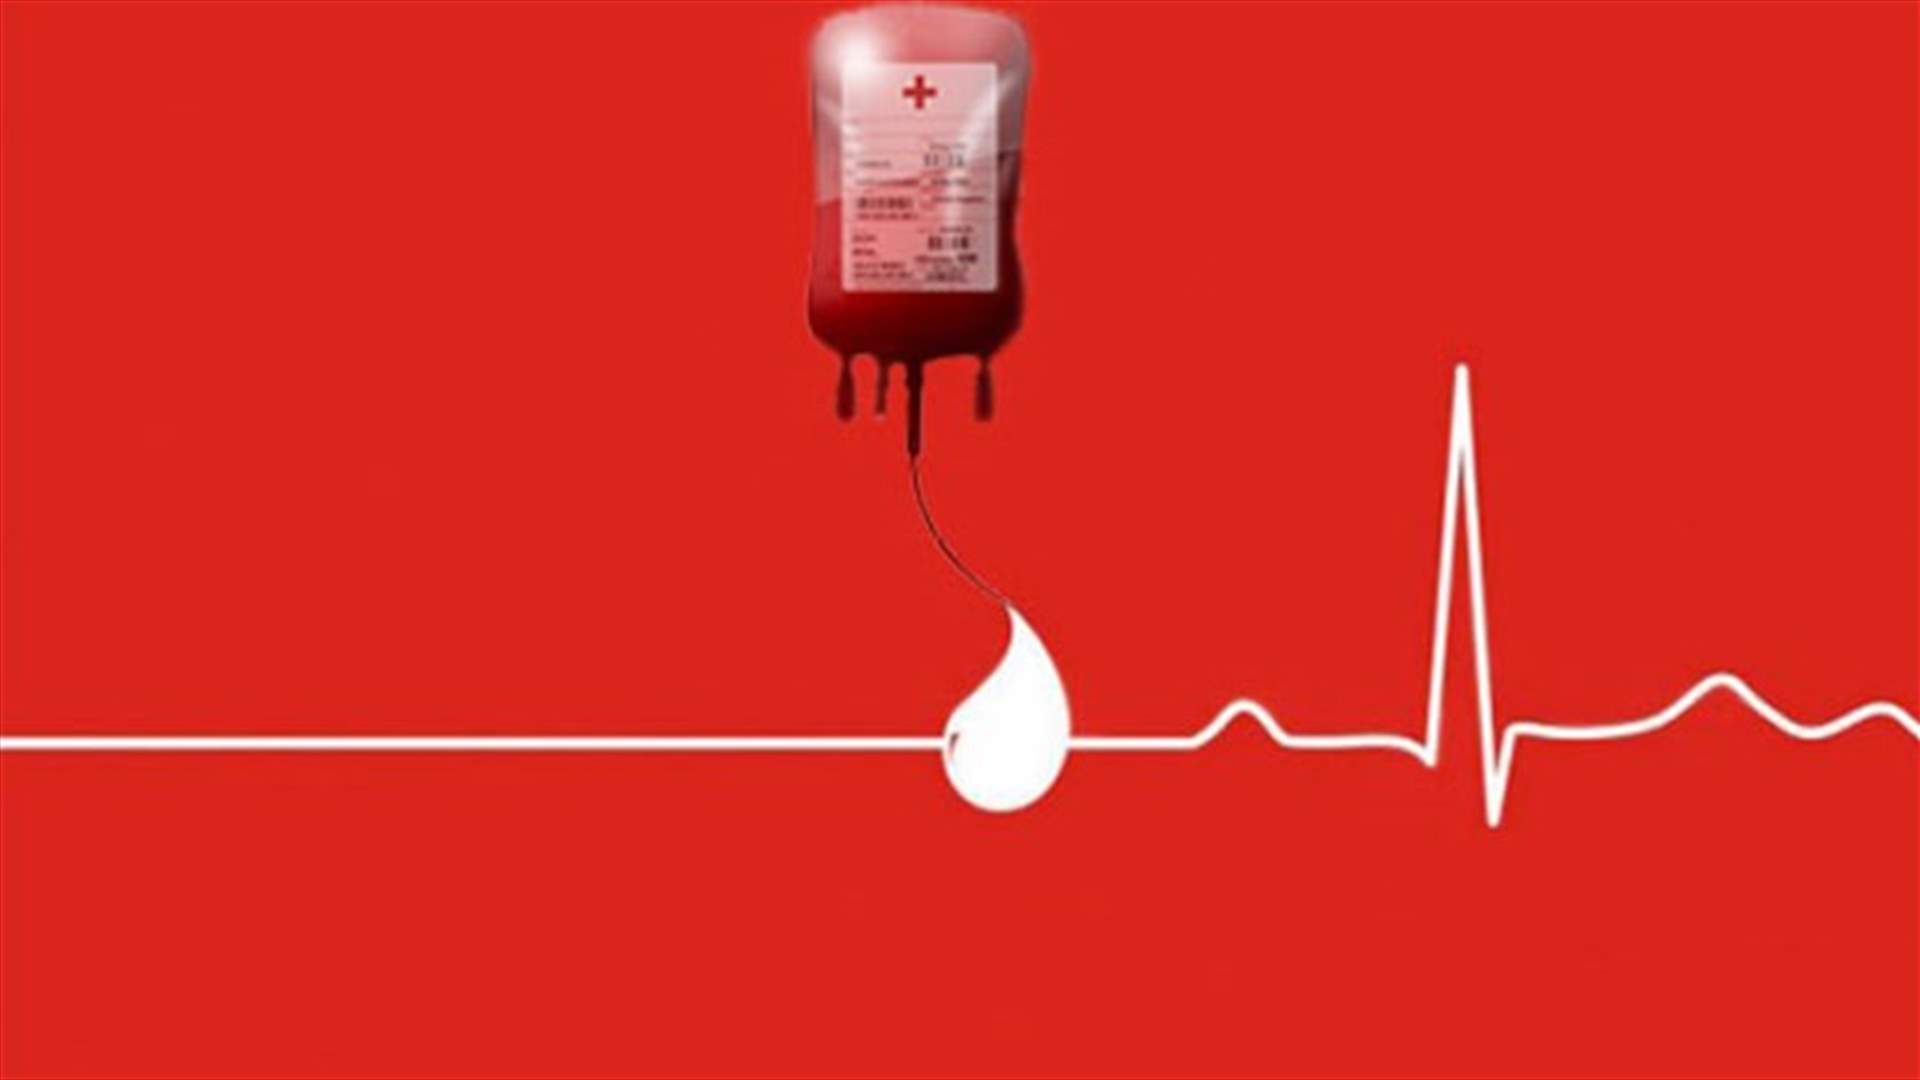 مريض بحاجة الى دم من فئة O- في مستشفى سان جورج الاشرفية للتبرع الاتصال على الرقم: 03/049737 أو 70/929115